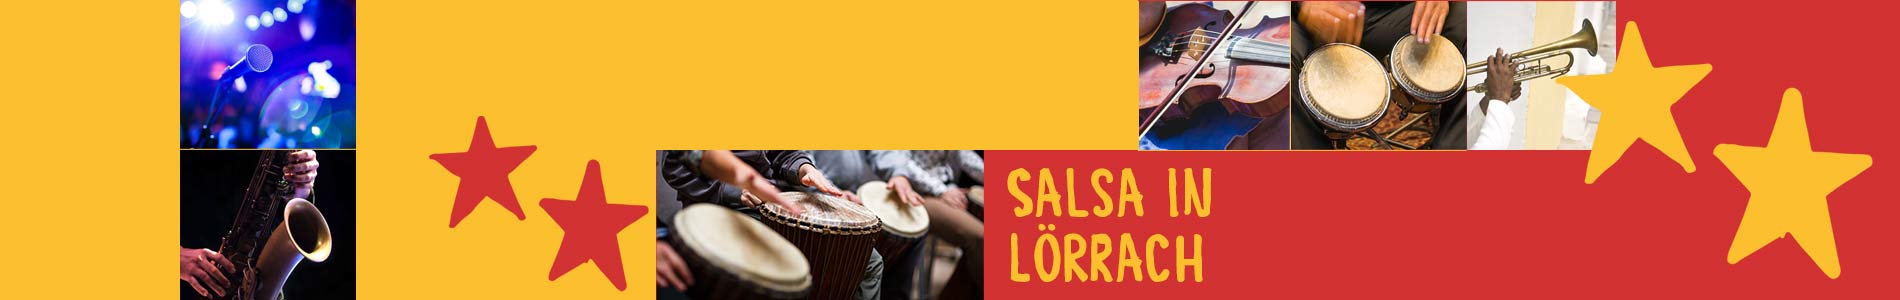 Salsa in Lörrach – Salsa lernen und tanzen, Tanzkurse, Partys, Veranstaltungen